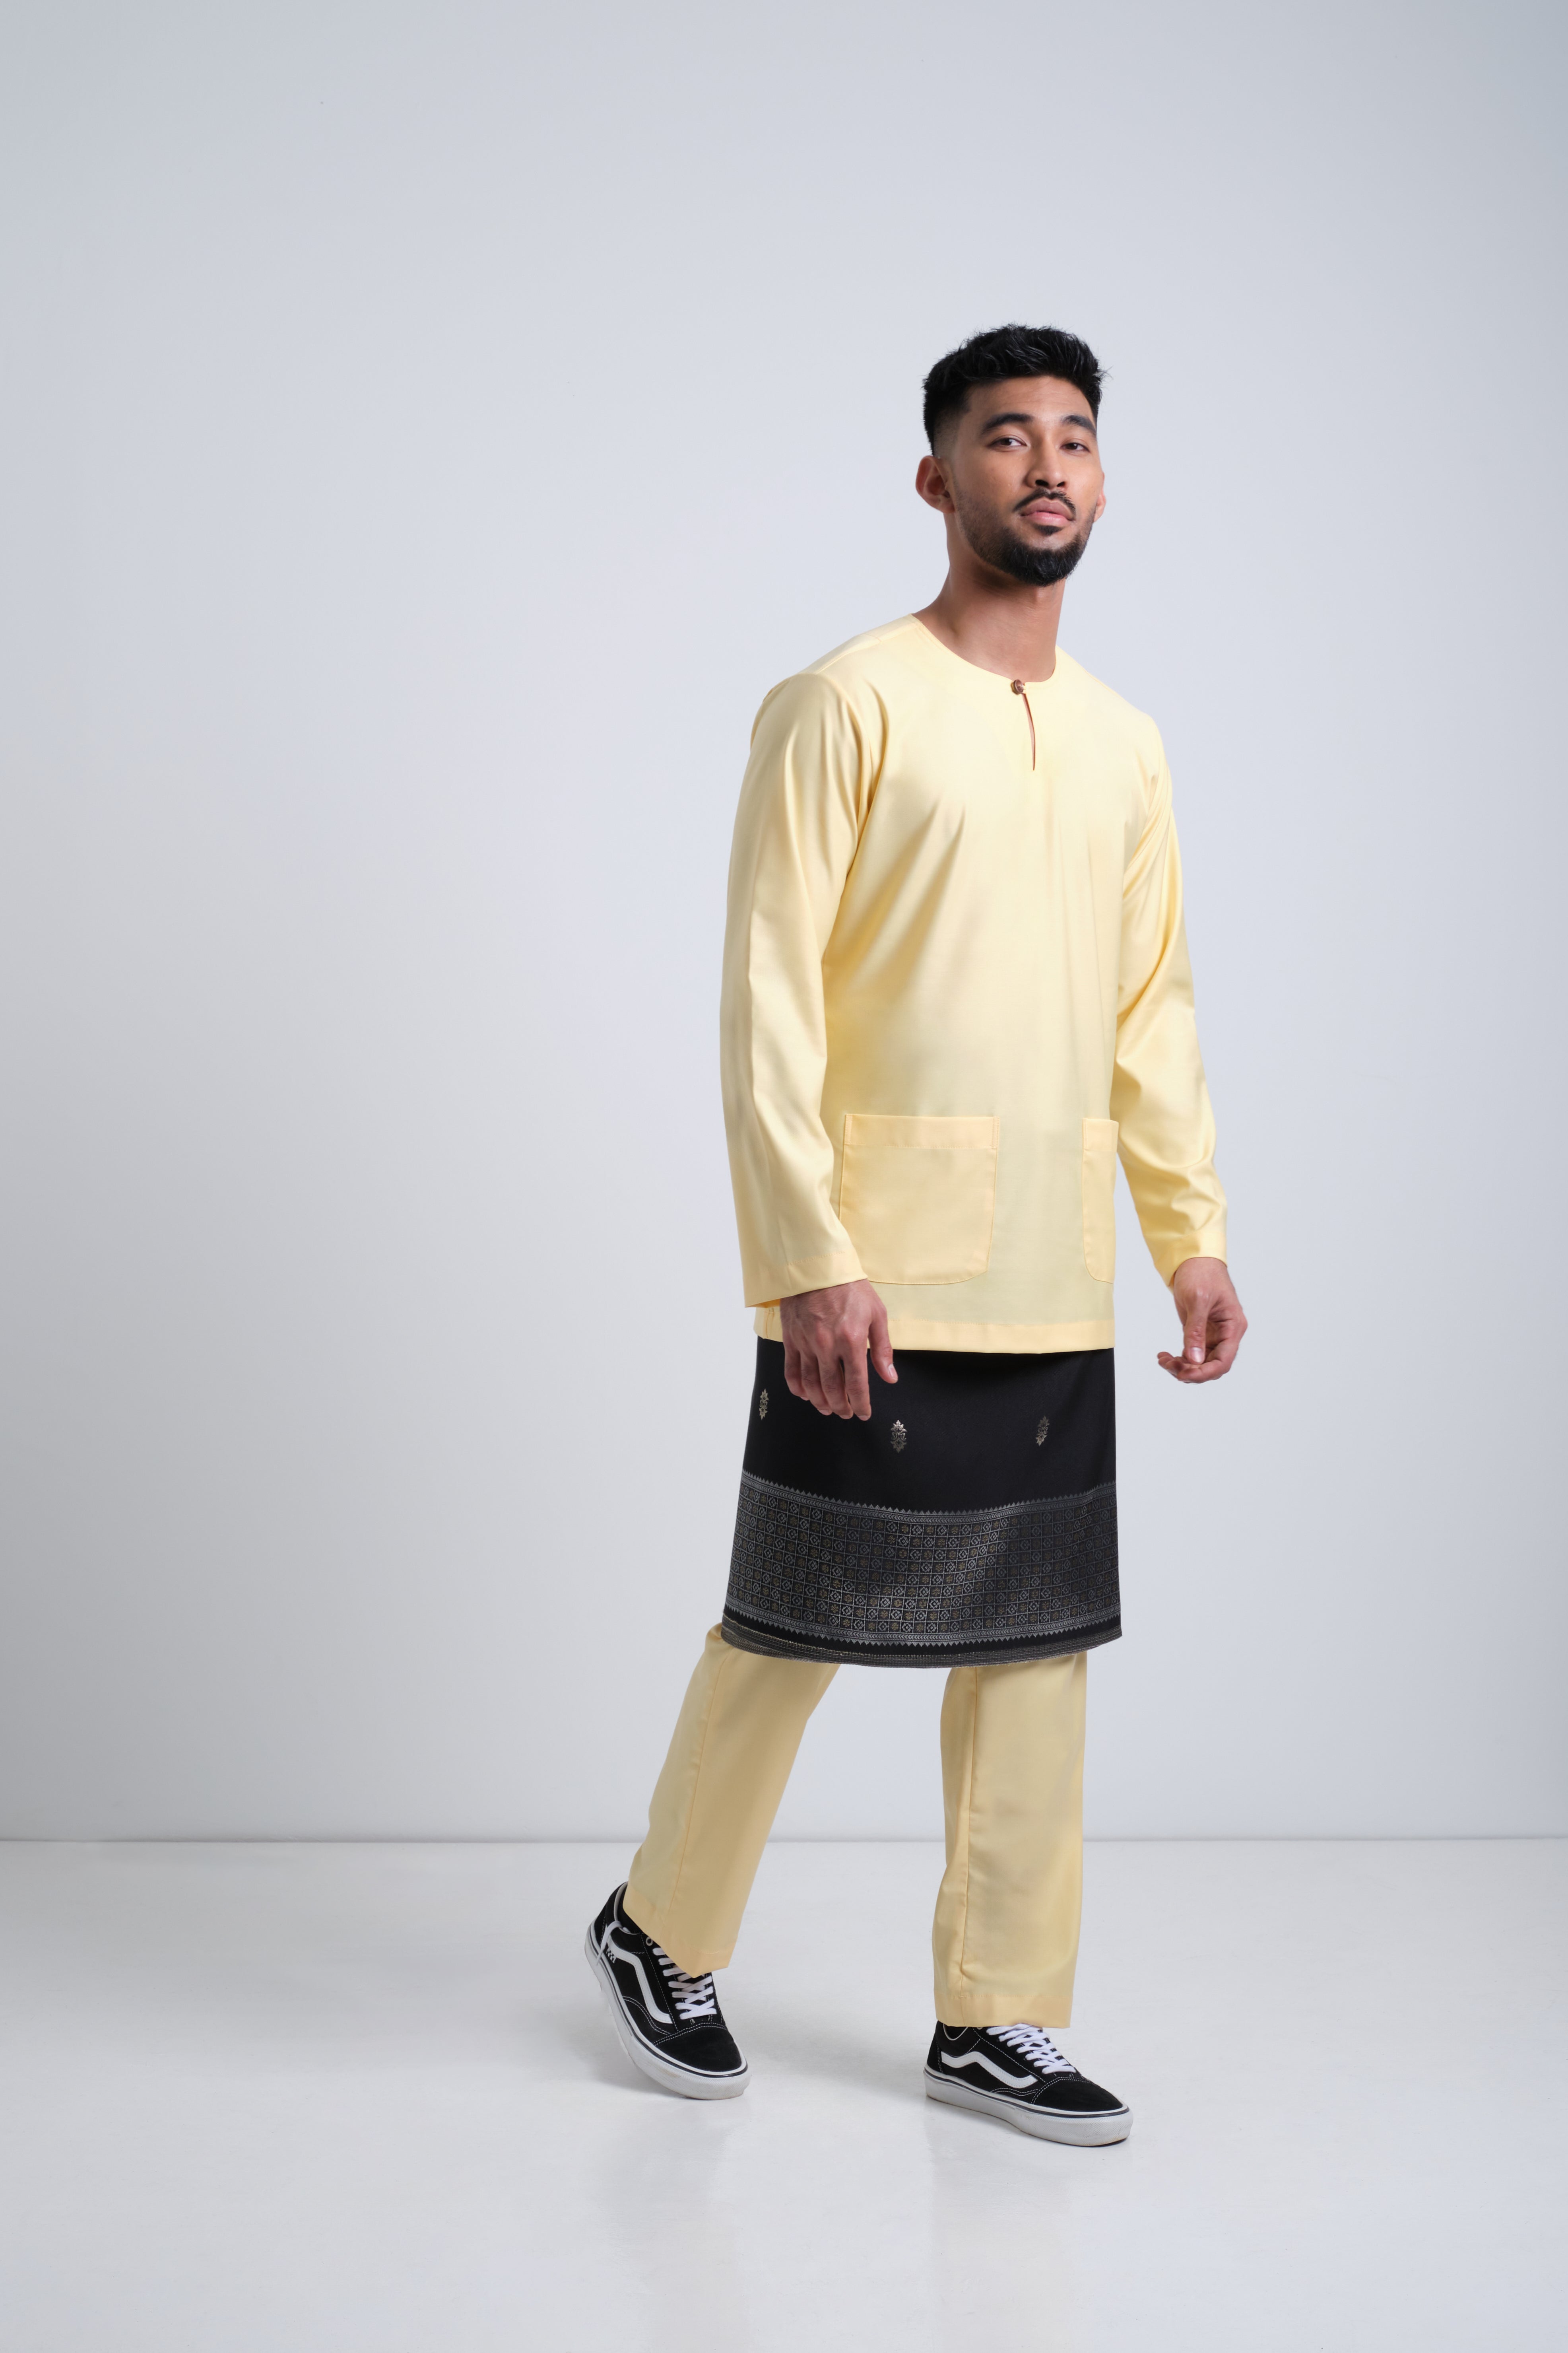 Patawali Modern Fit Baju Melayu Teluk Belanga - Soft Yellow